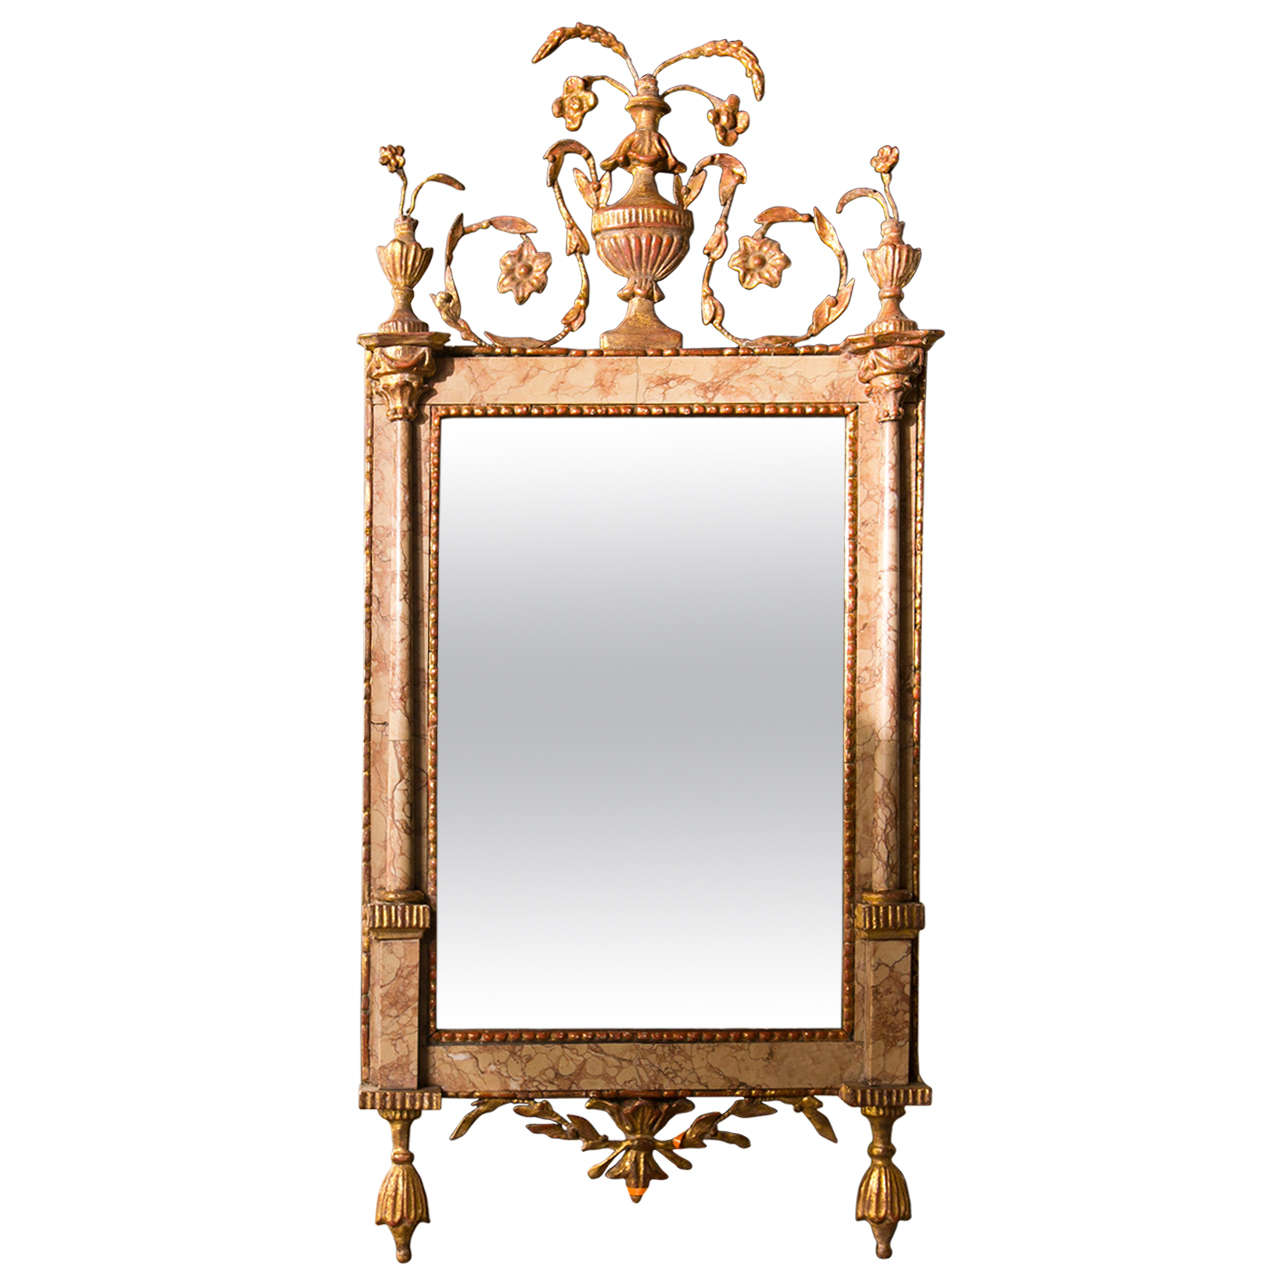 Miroir français ancien en marbre de style néoclassique du 18ème siècle, bois doré, vieilli